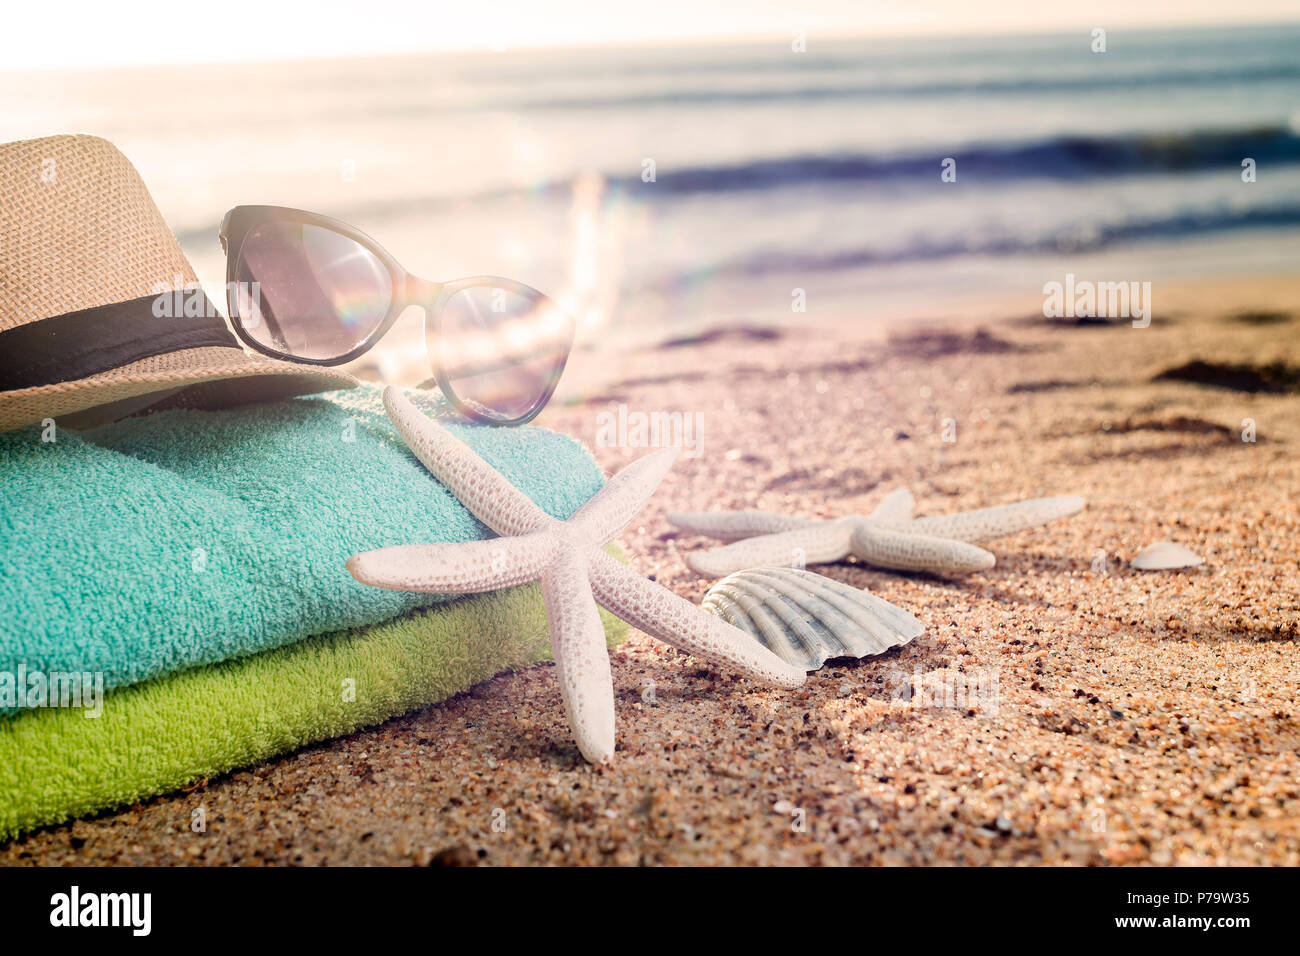 Accesorios de verano como coloridas toallas, sombrero de paja, gafas de sol y conchas en la playa Foto de stock